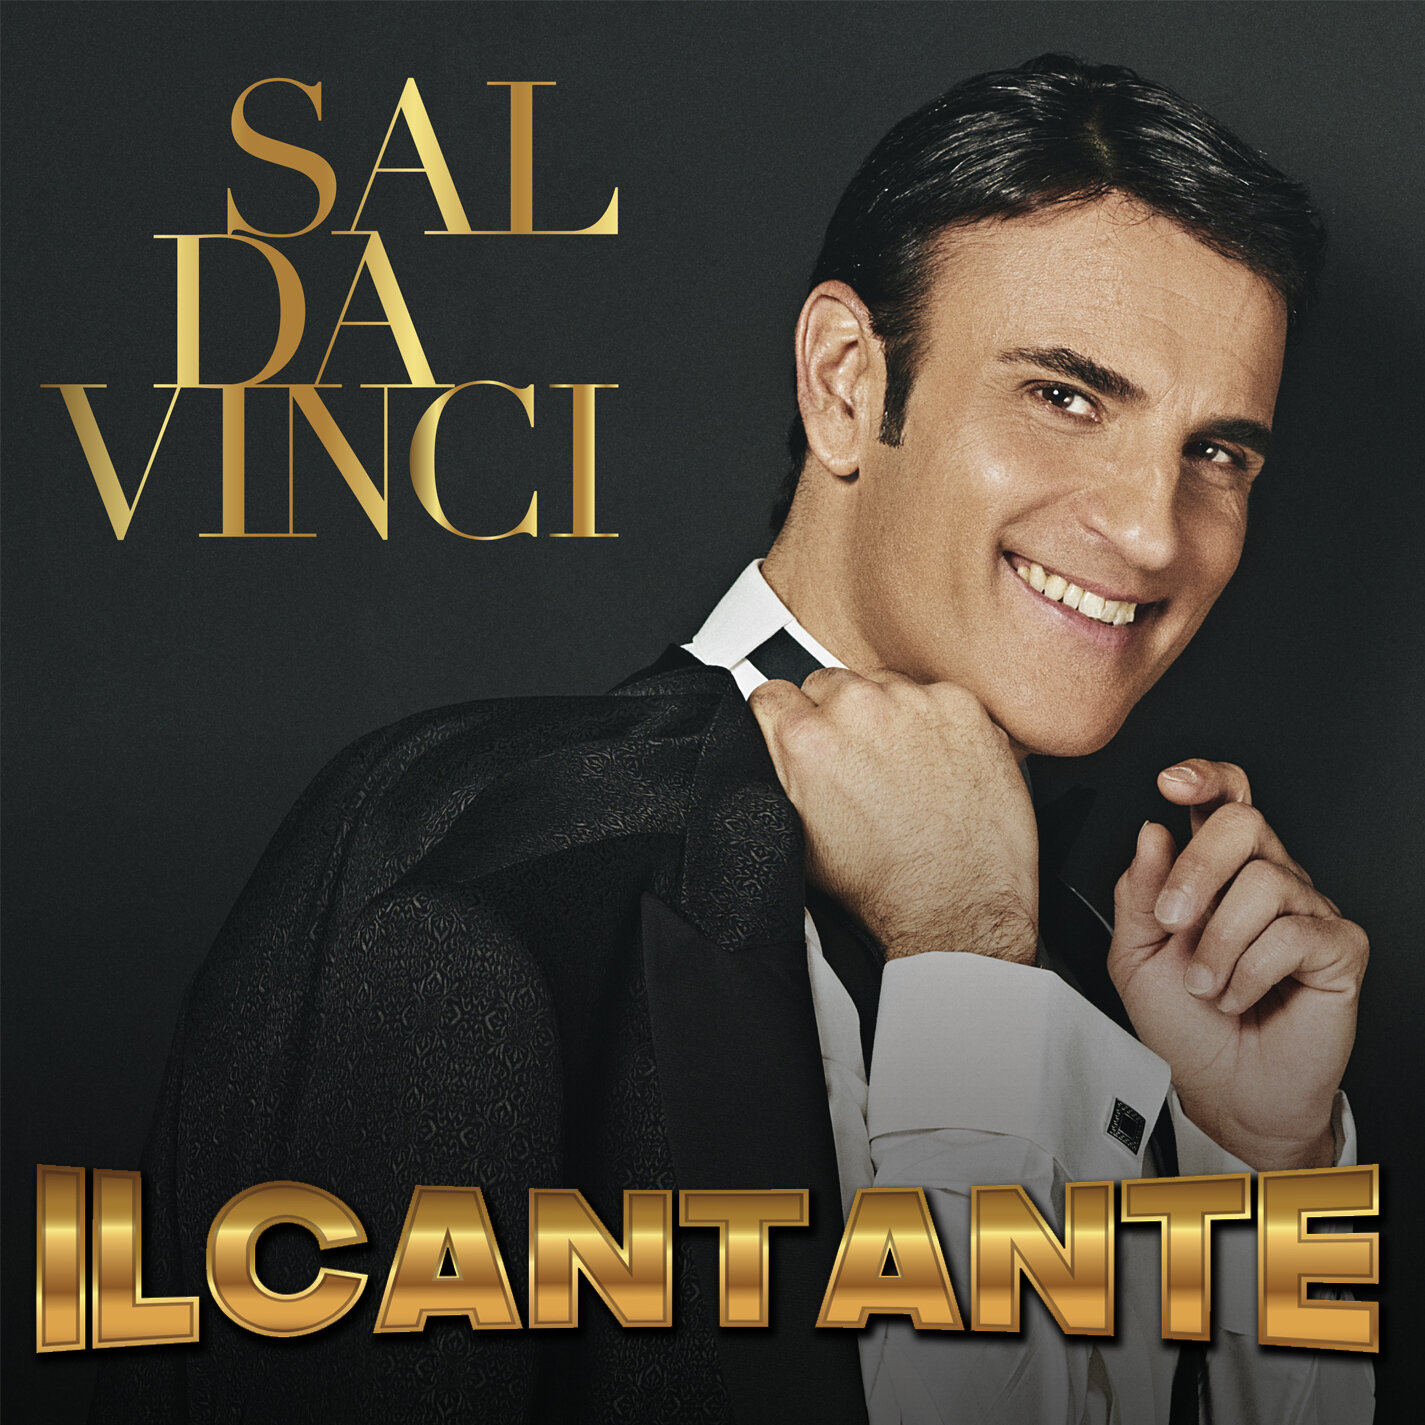 ‘Il cantante’, il nuovo singolo di Sal Da Vinci